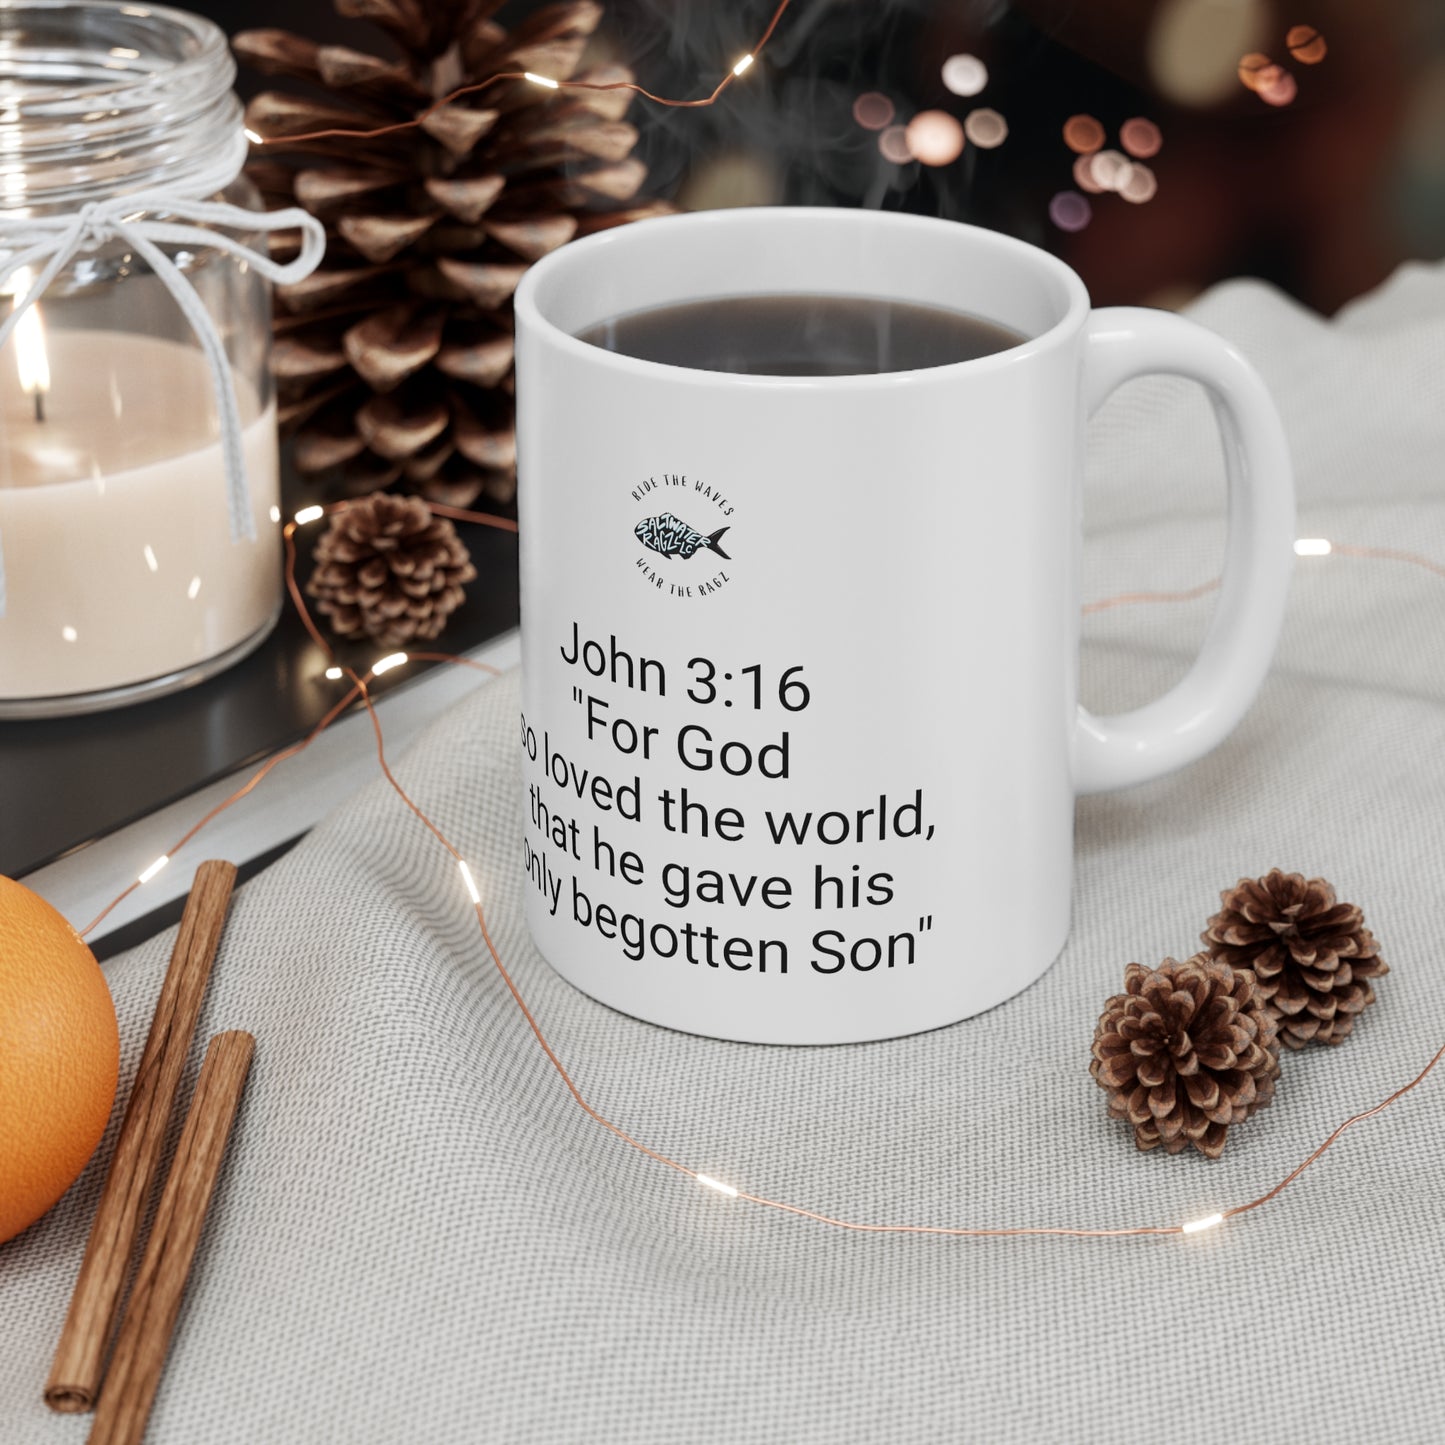 John 3:16 "For God So Loved The World" Ceramic Mug 11oz